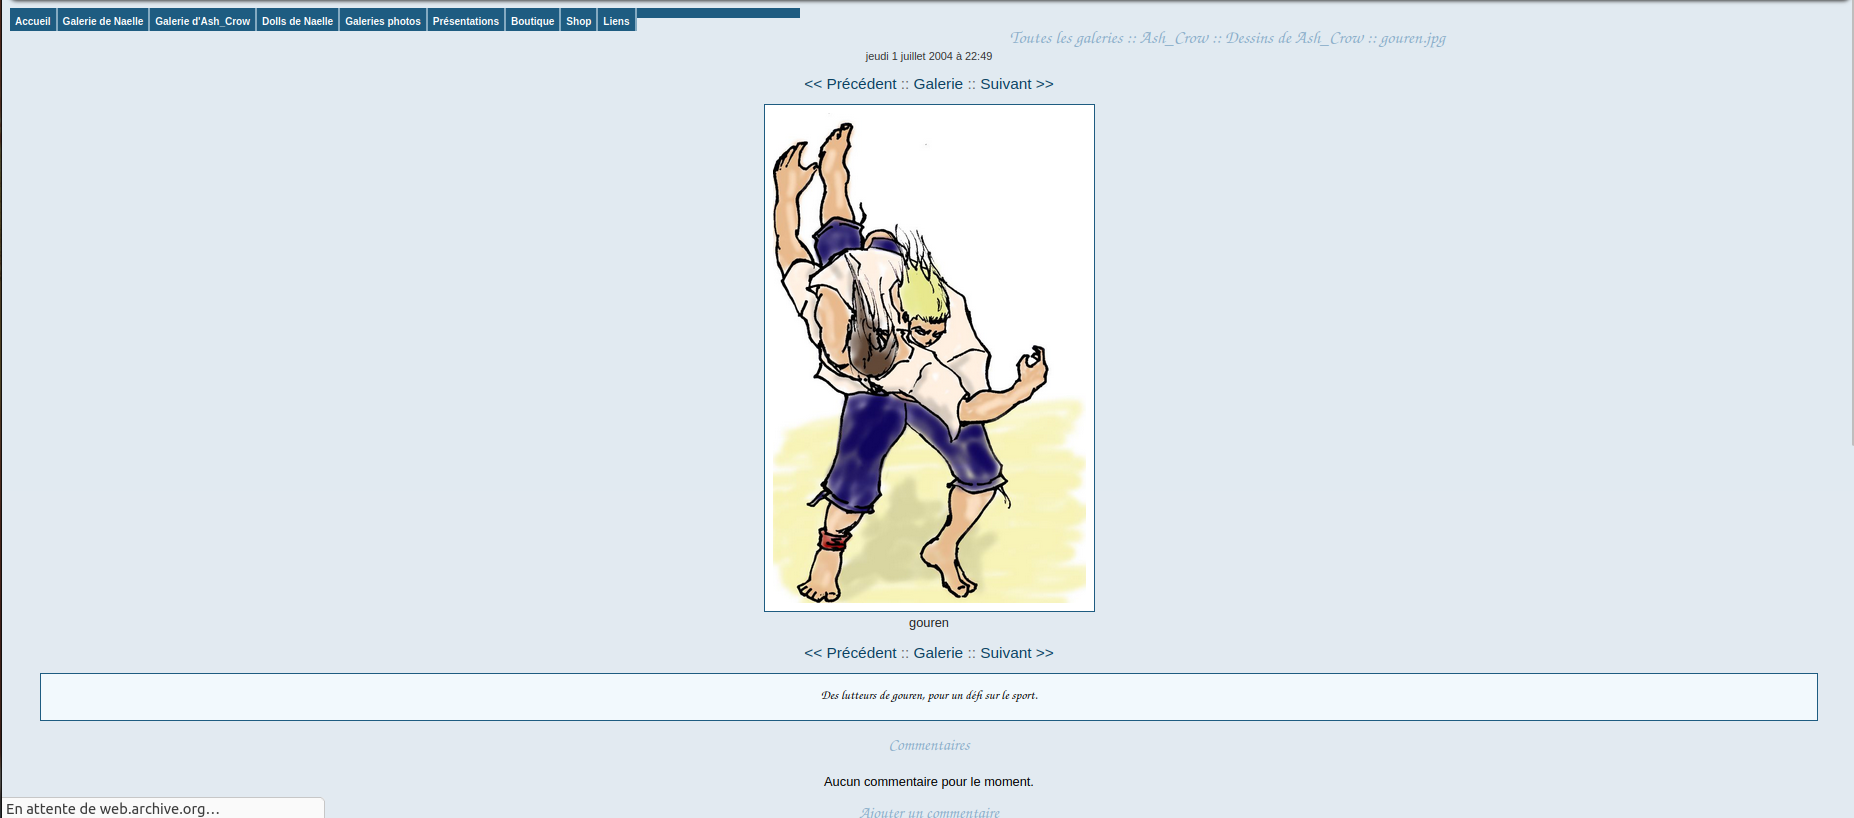 Une page au fond bleu ciel avec un dessin représentant deux lutteurs de gouren.